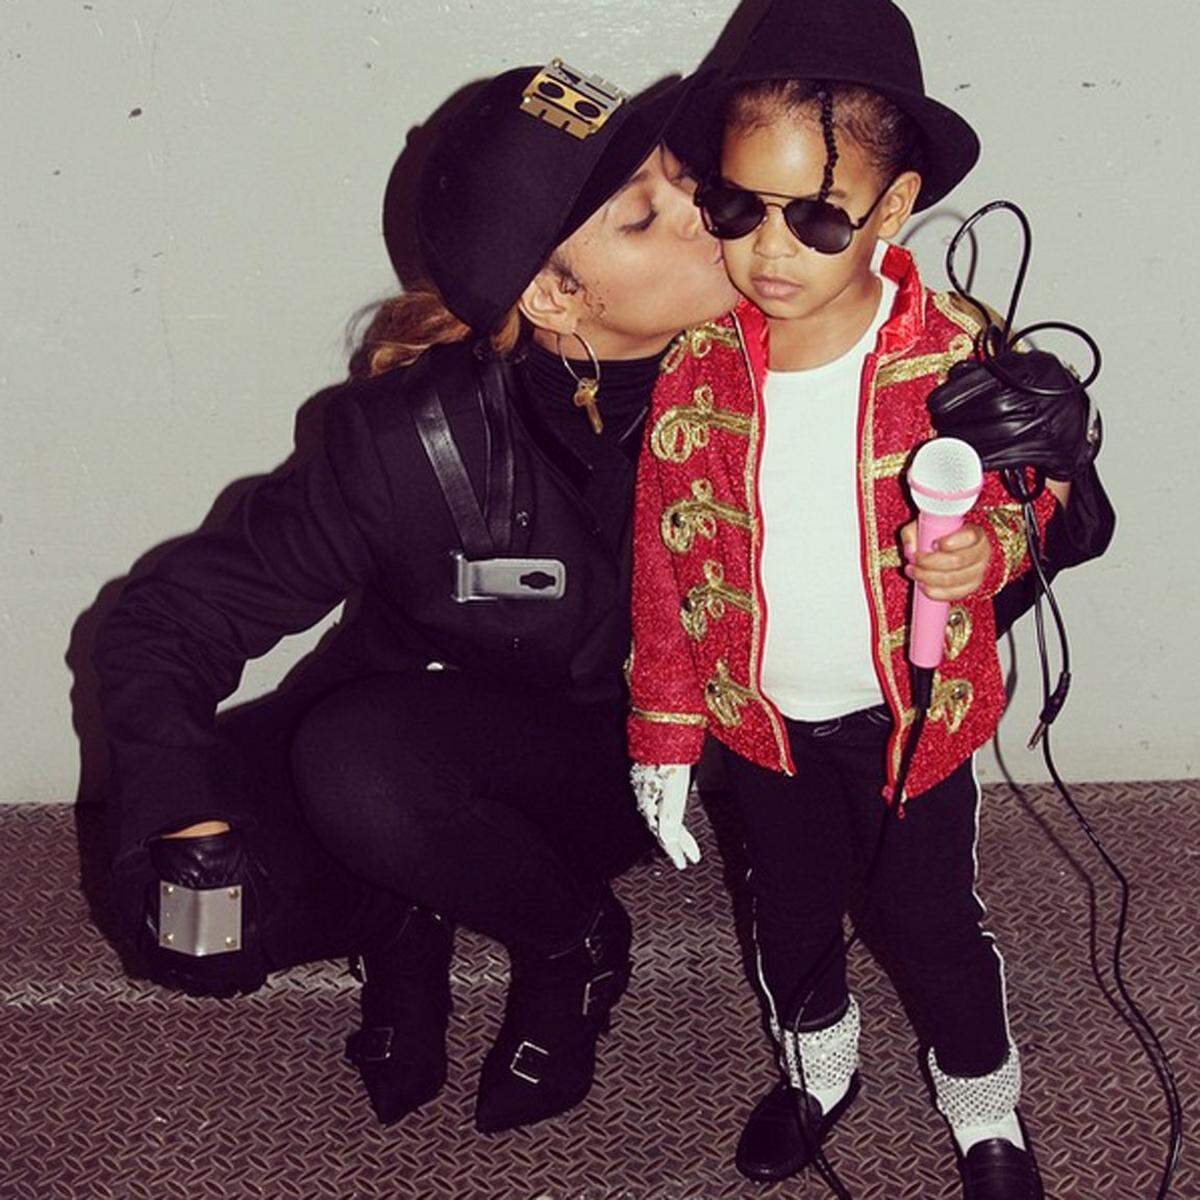 ... sondern auch Janet Jackson. Töchterchen Ivy war Michael Jackson.